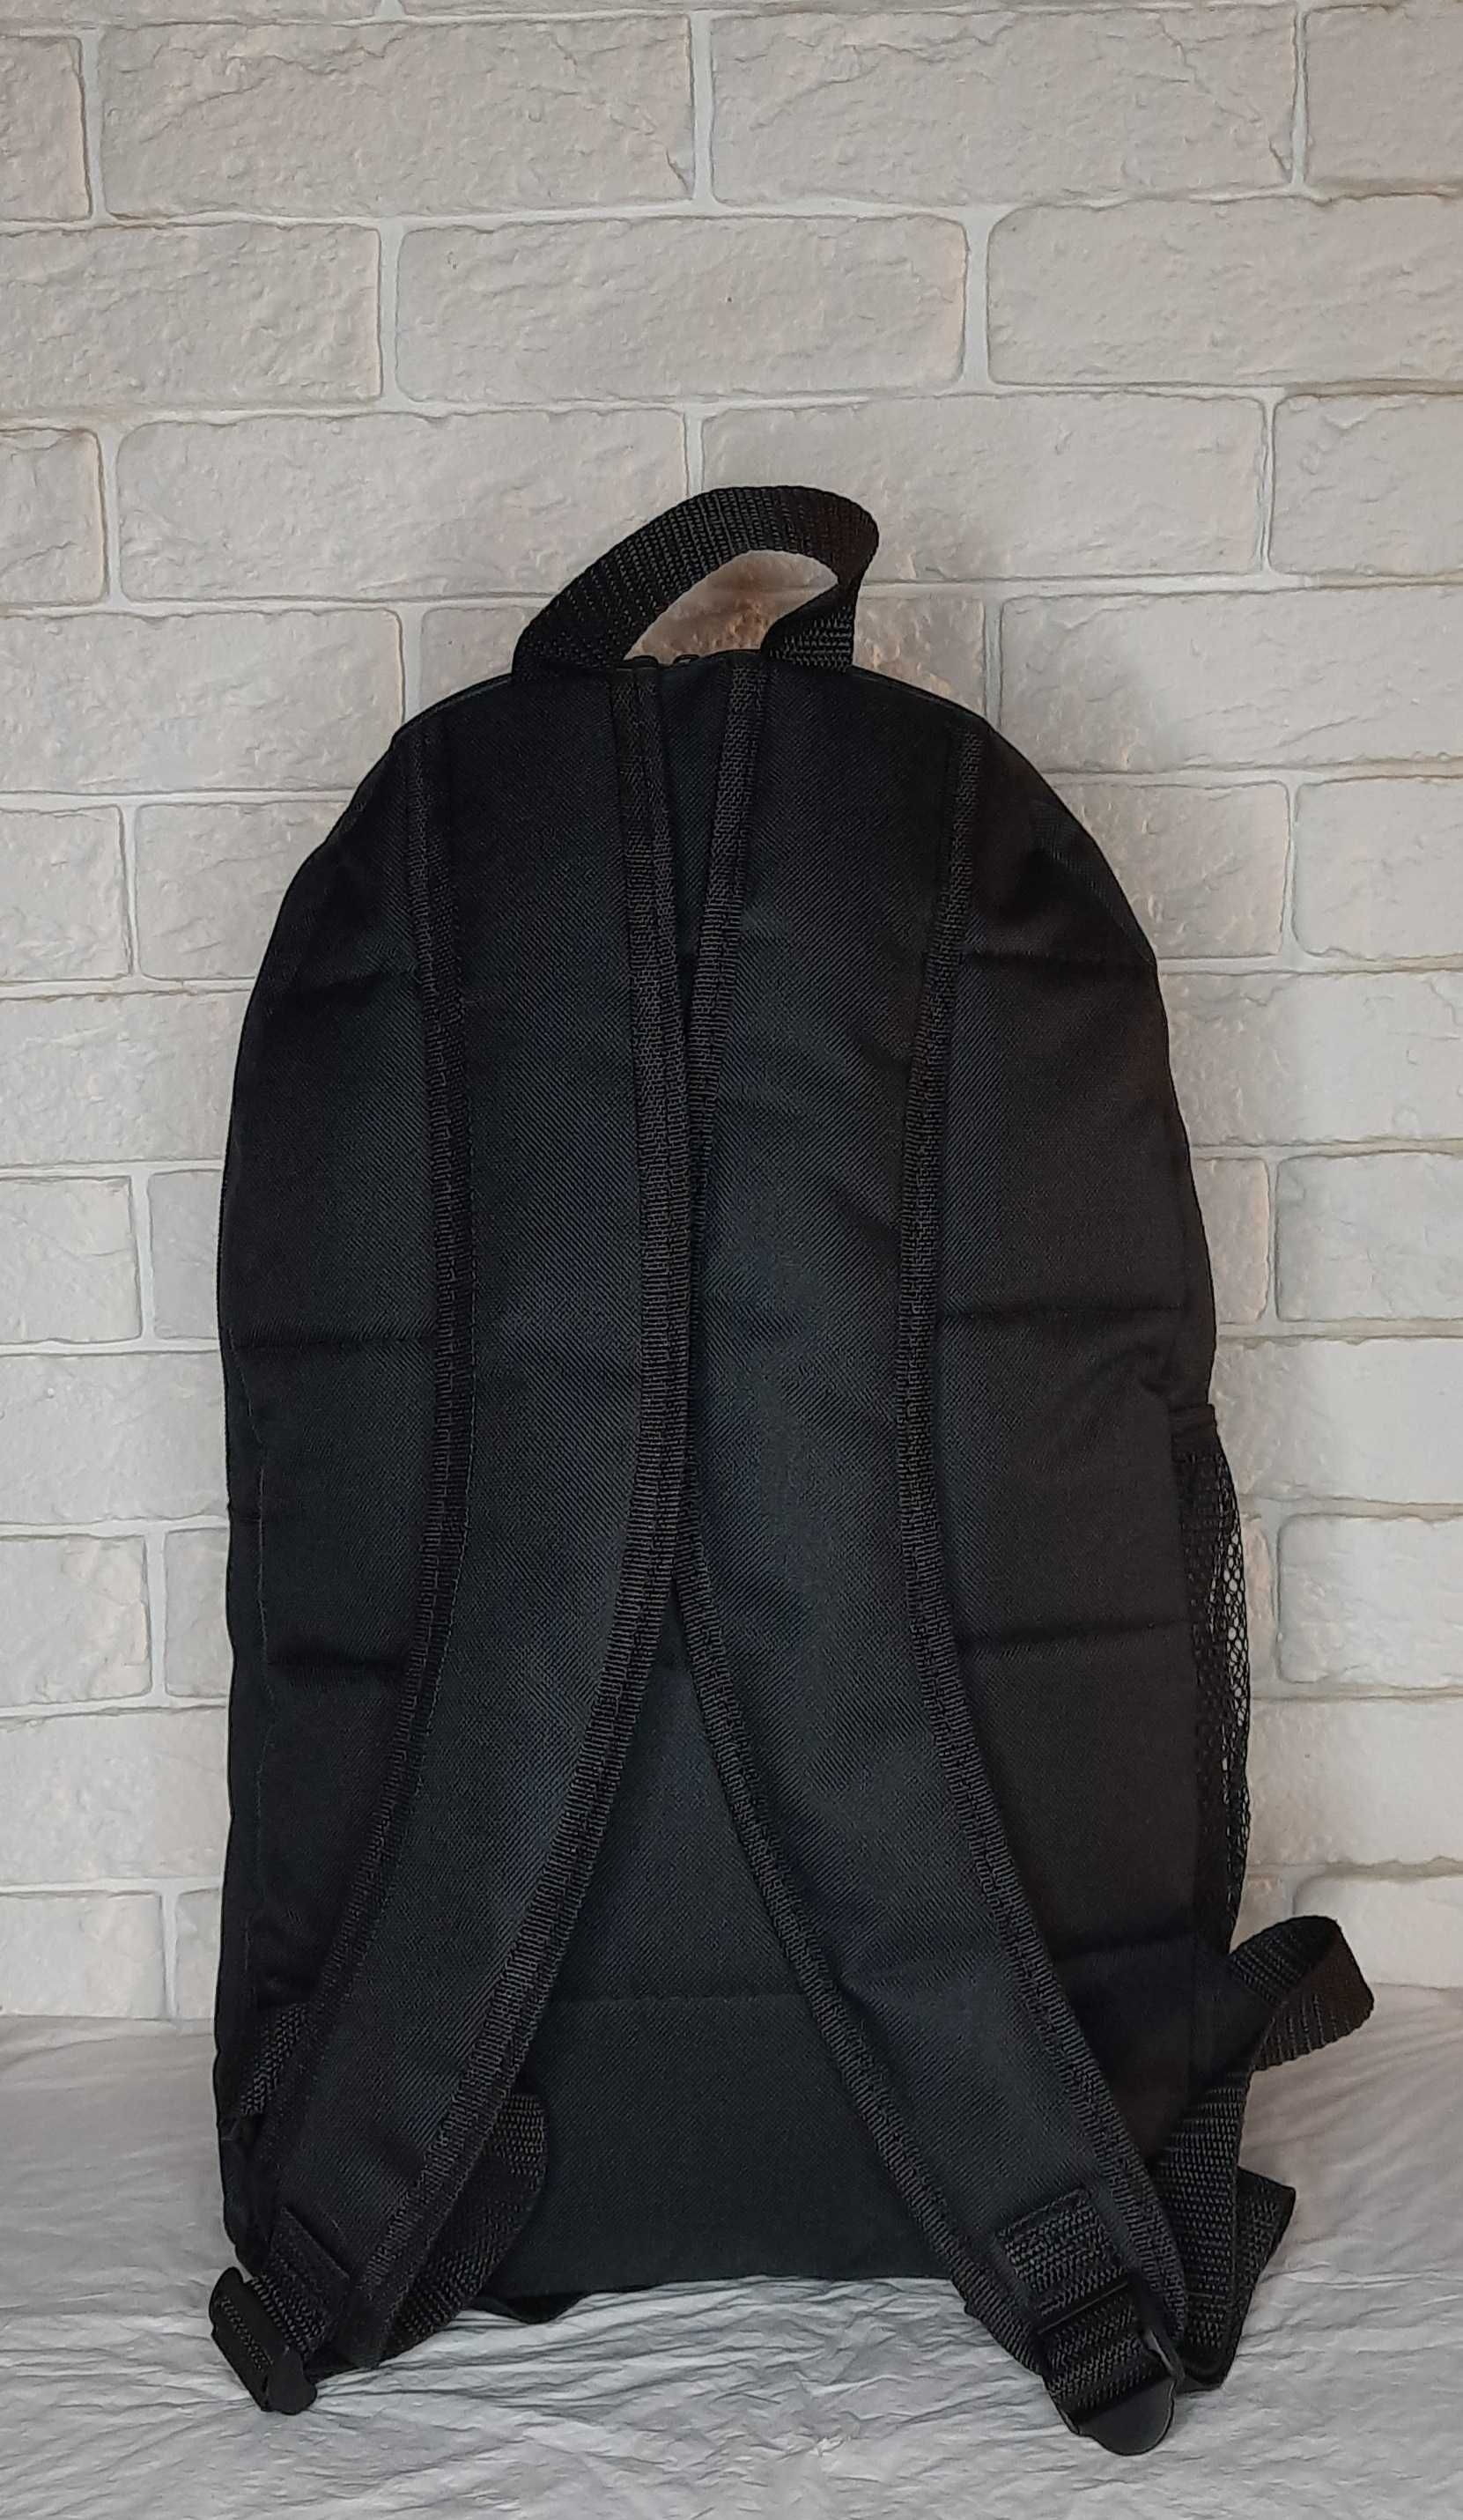 Городской,спортивный рюкзак Nike чёрный. Новый.